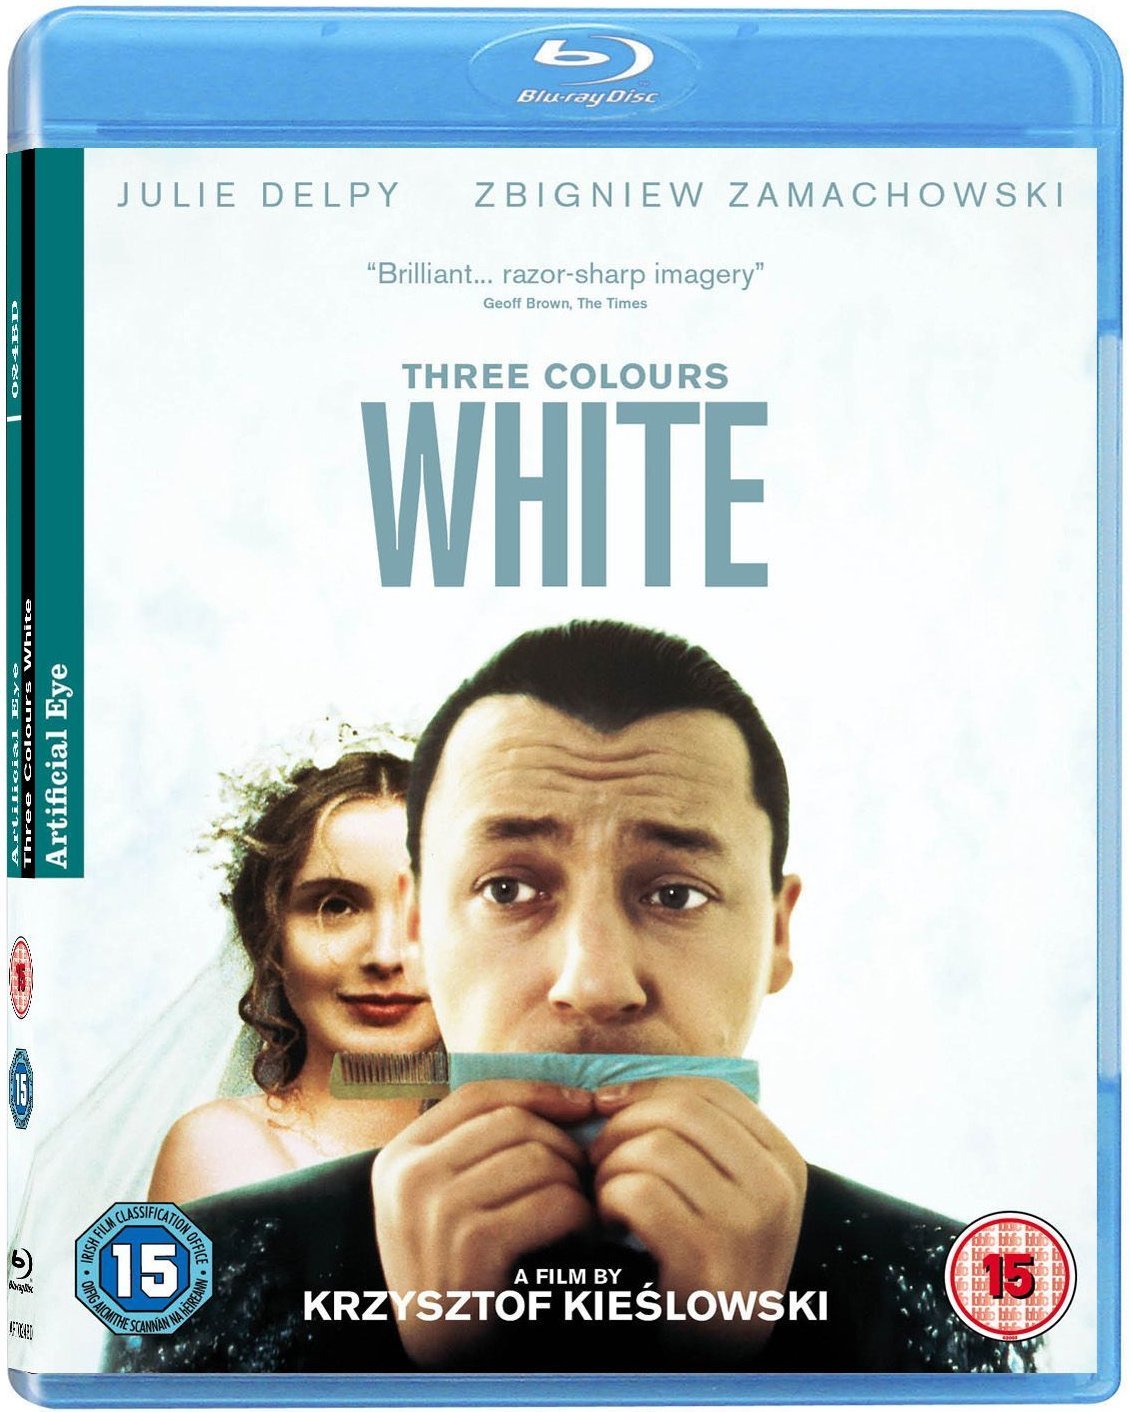 Three Colours White (Blu Ray Disc) / Trois couleurs - Blanc | Krzysztof Kieslowski